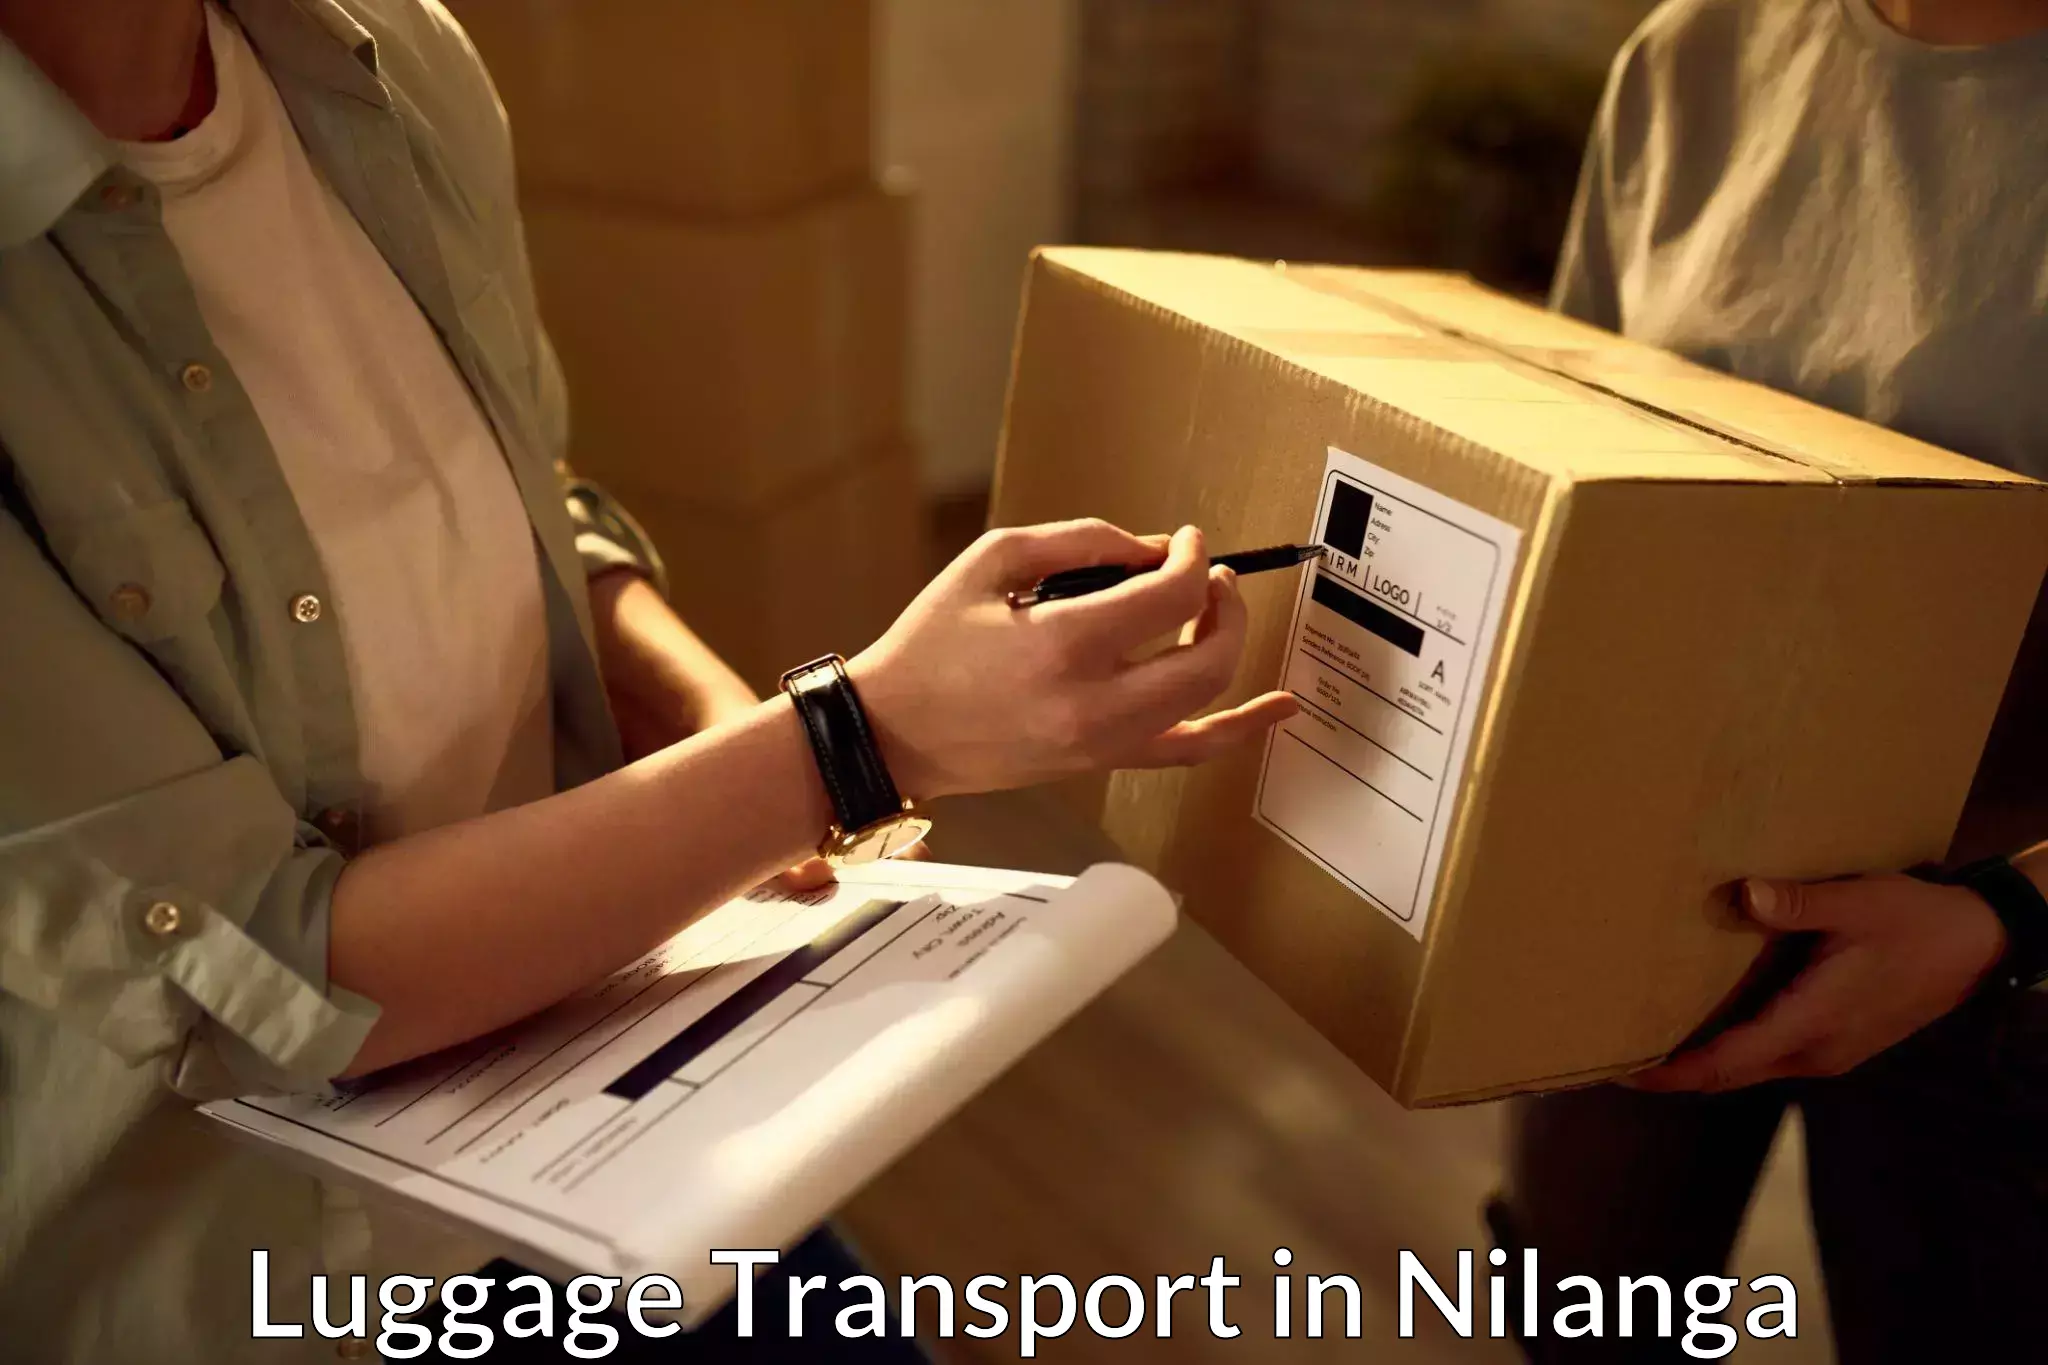 Baggage transport professionals in Nilanga